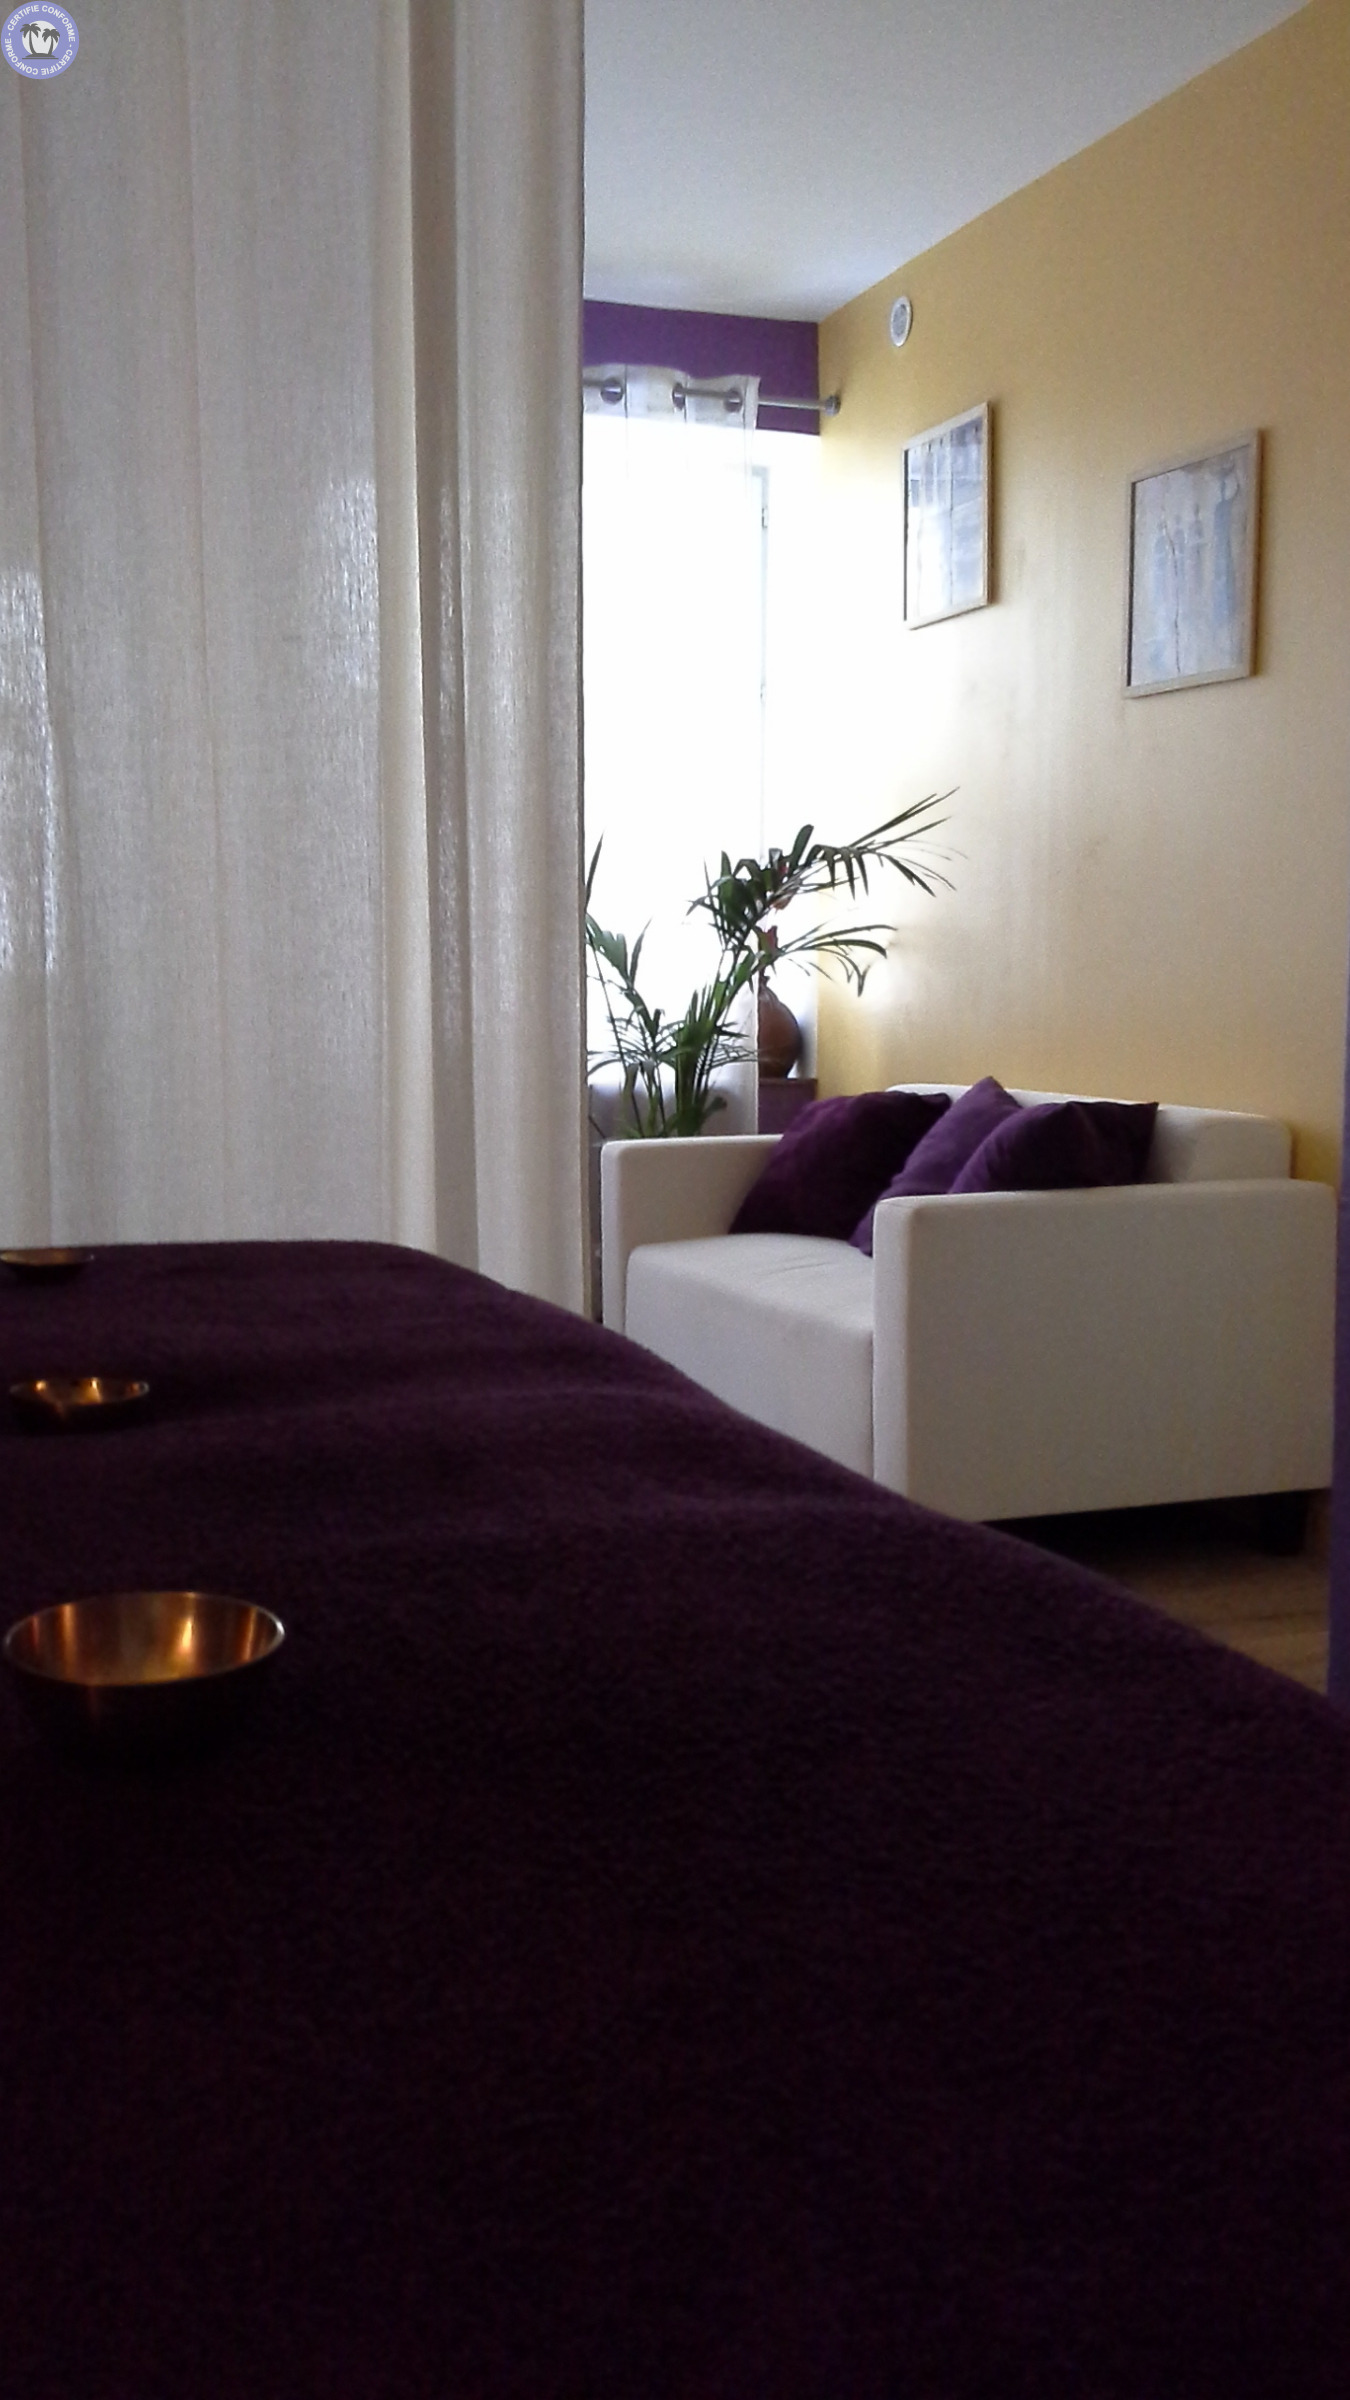 bien-etre-amp-massages-occitanie-herault-un-petit-grain-de-zen-pour-un-grand-moment-de-relaxation8202135375457636470.jpg